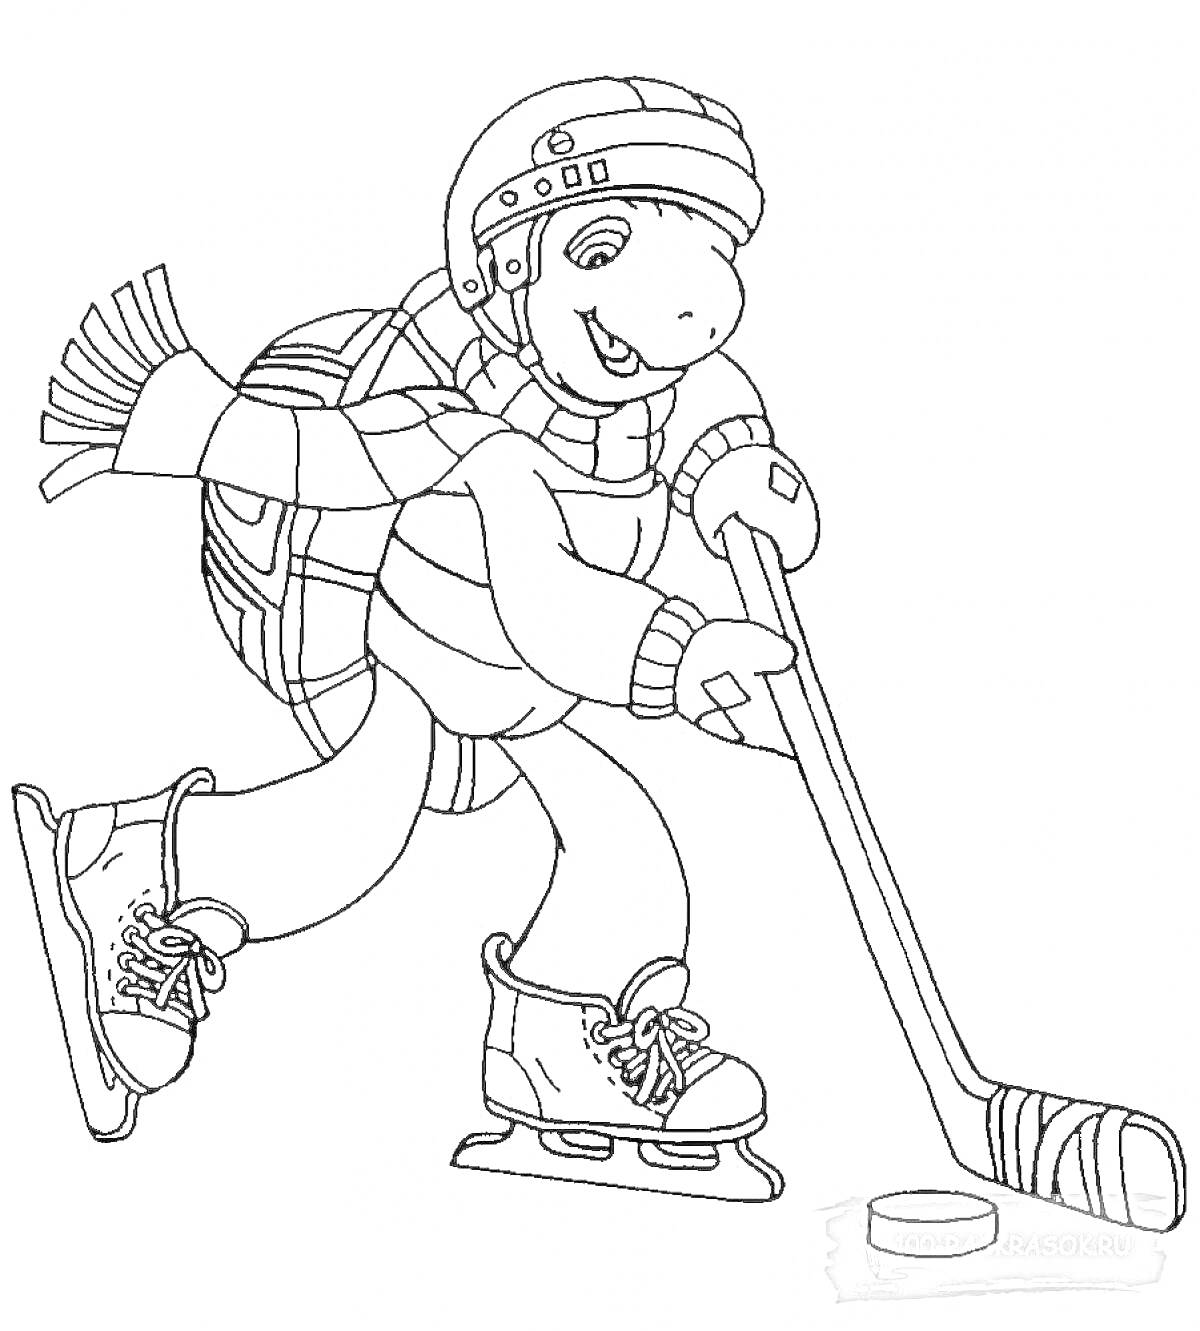 Раскраска Черепаха играет в хоккей в шлеме, шарфе и коньках с хоккейной клюшкой и шайбой.